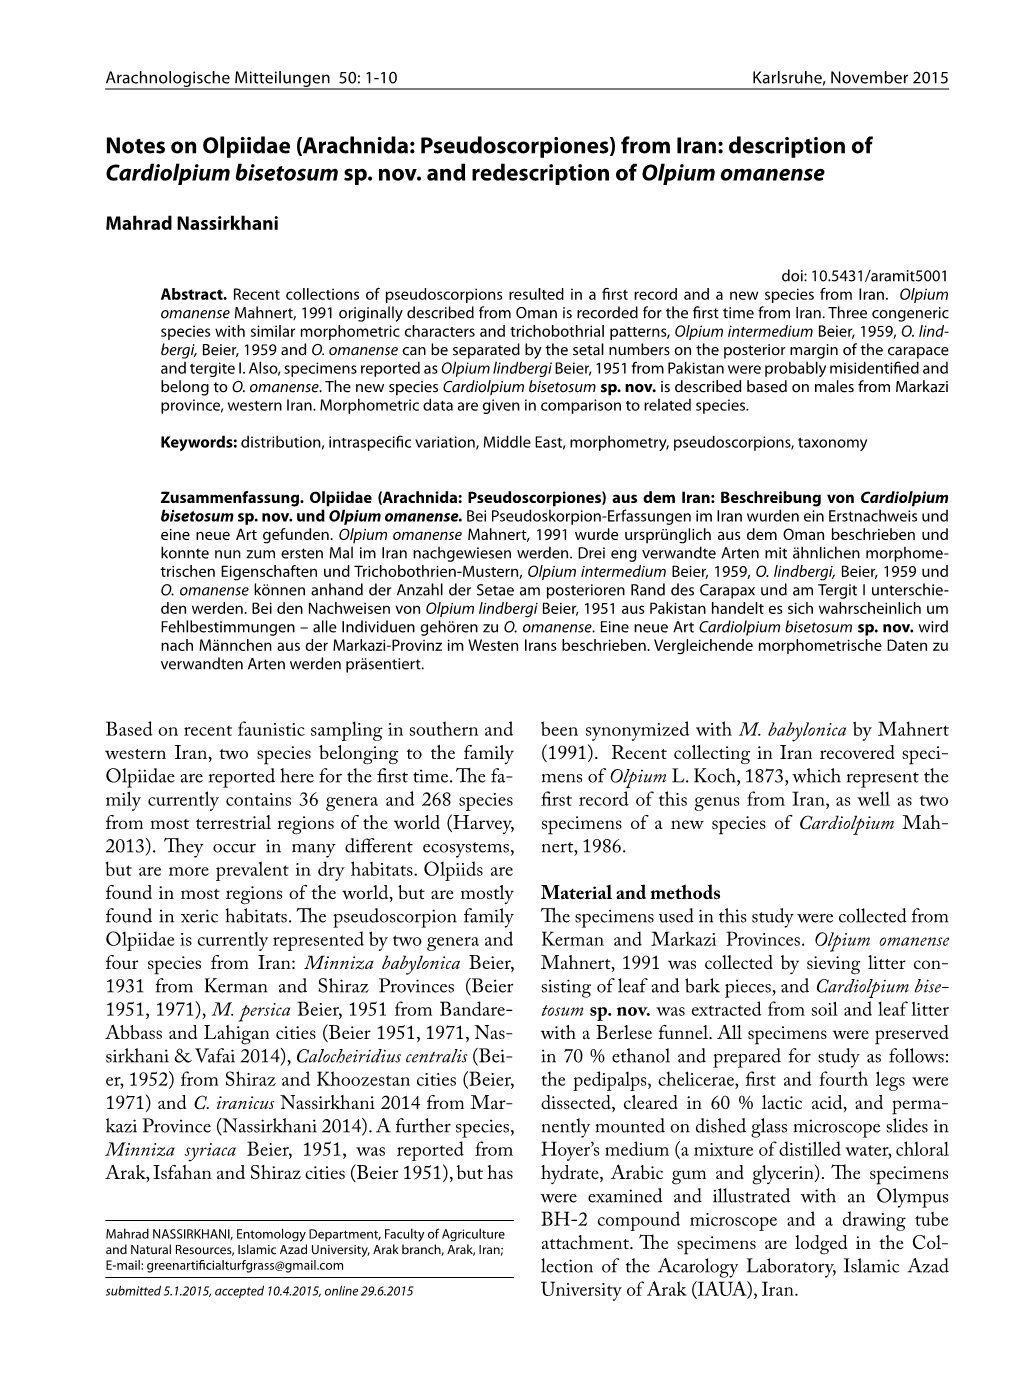 Notes on Olpiidae (Arachnida: Pseudoscorpiones) from Iran: Description of Cardiolpium Bisetosum Sp